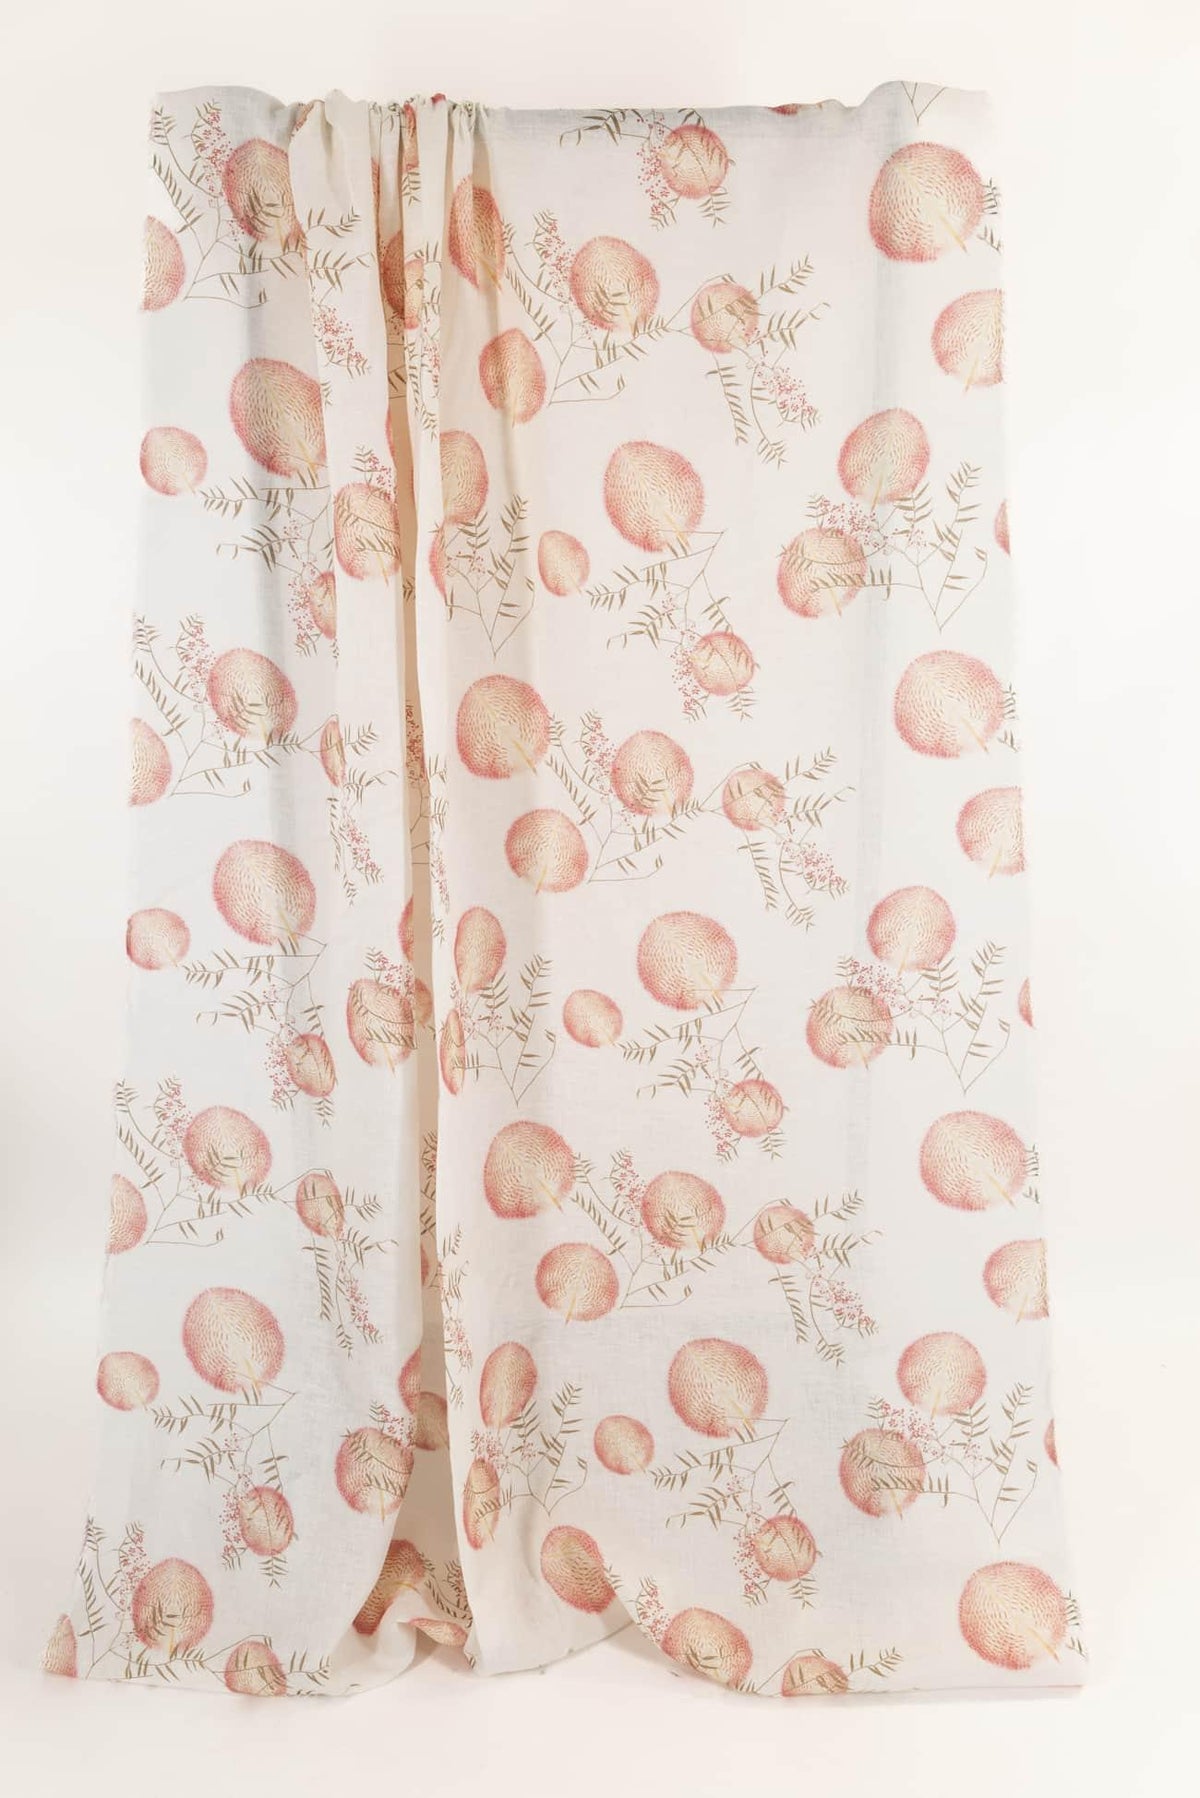 Nara Euro Linen Woven - Marcy Tilton Fabrics